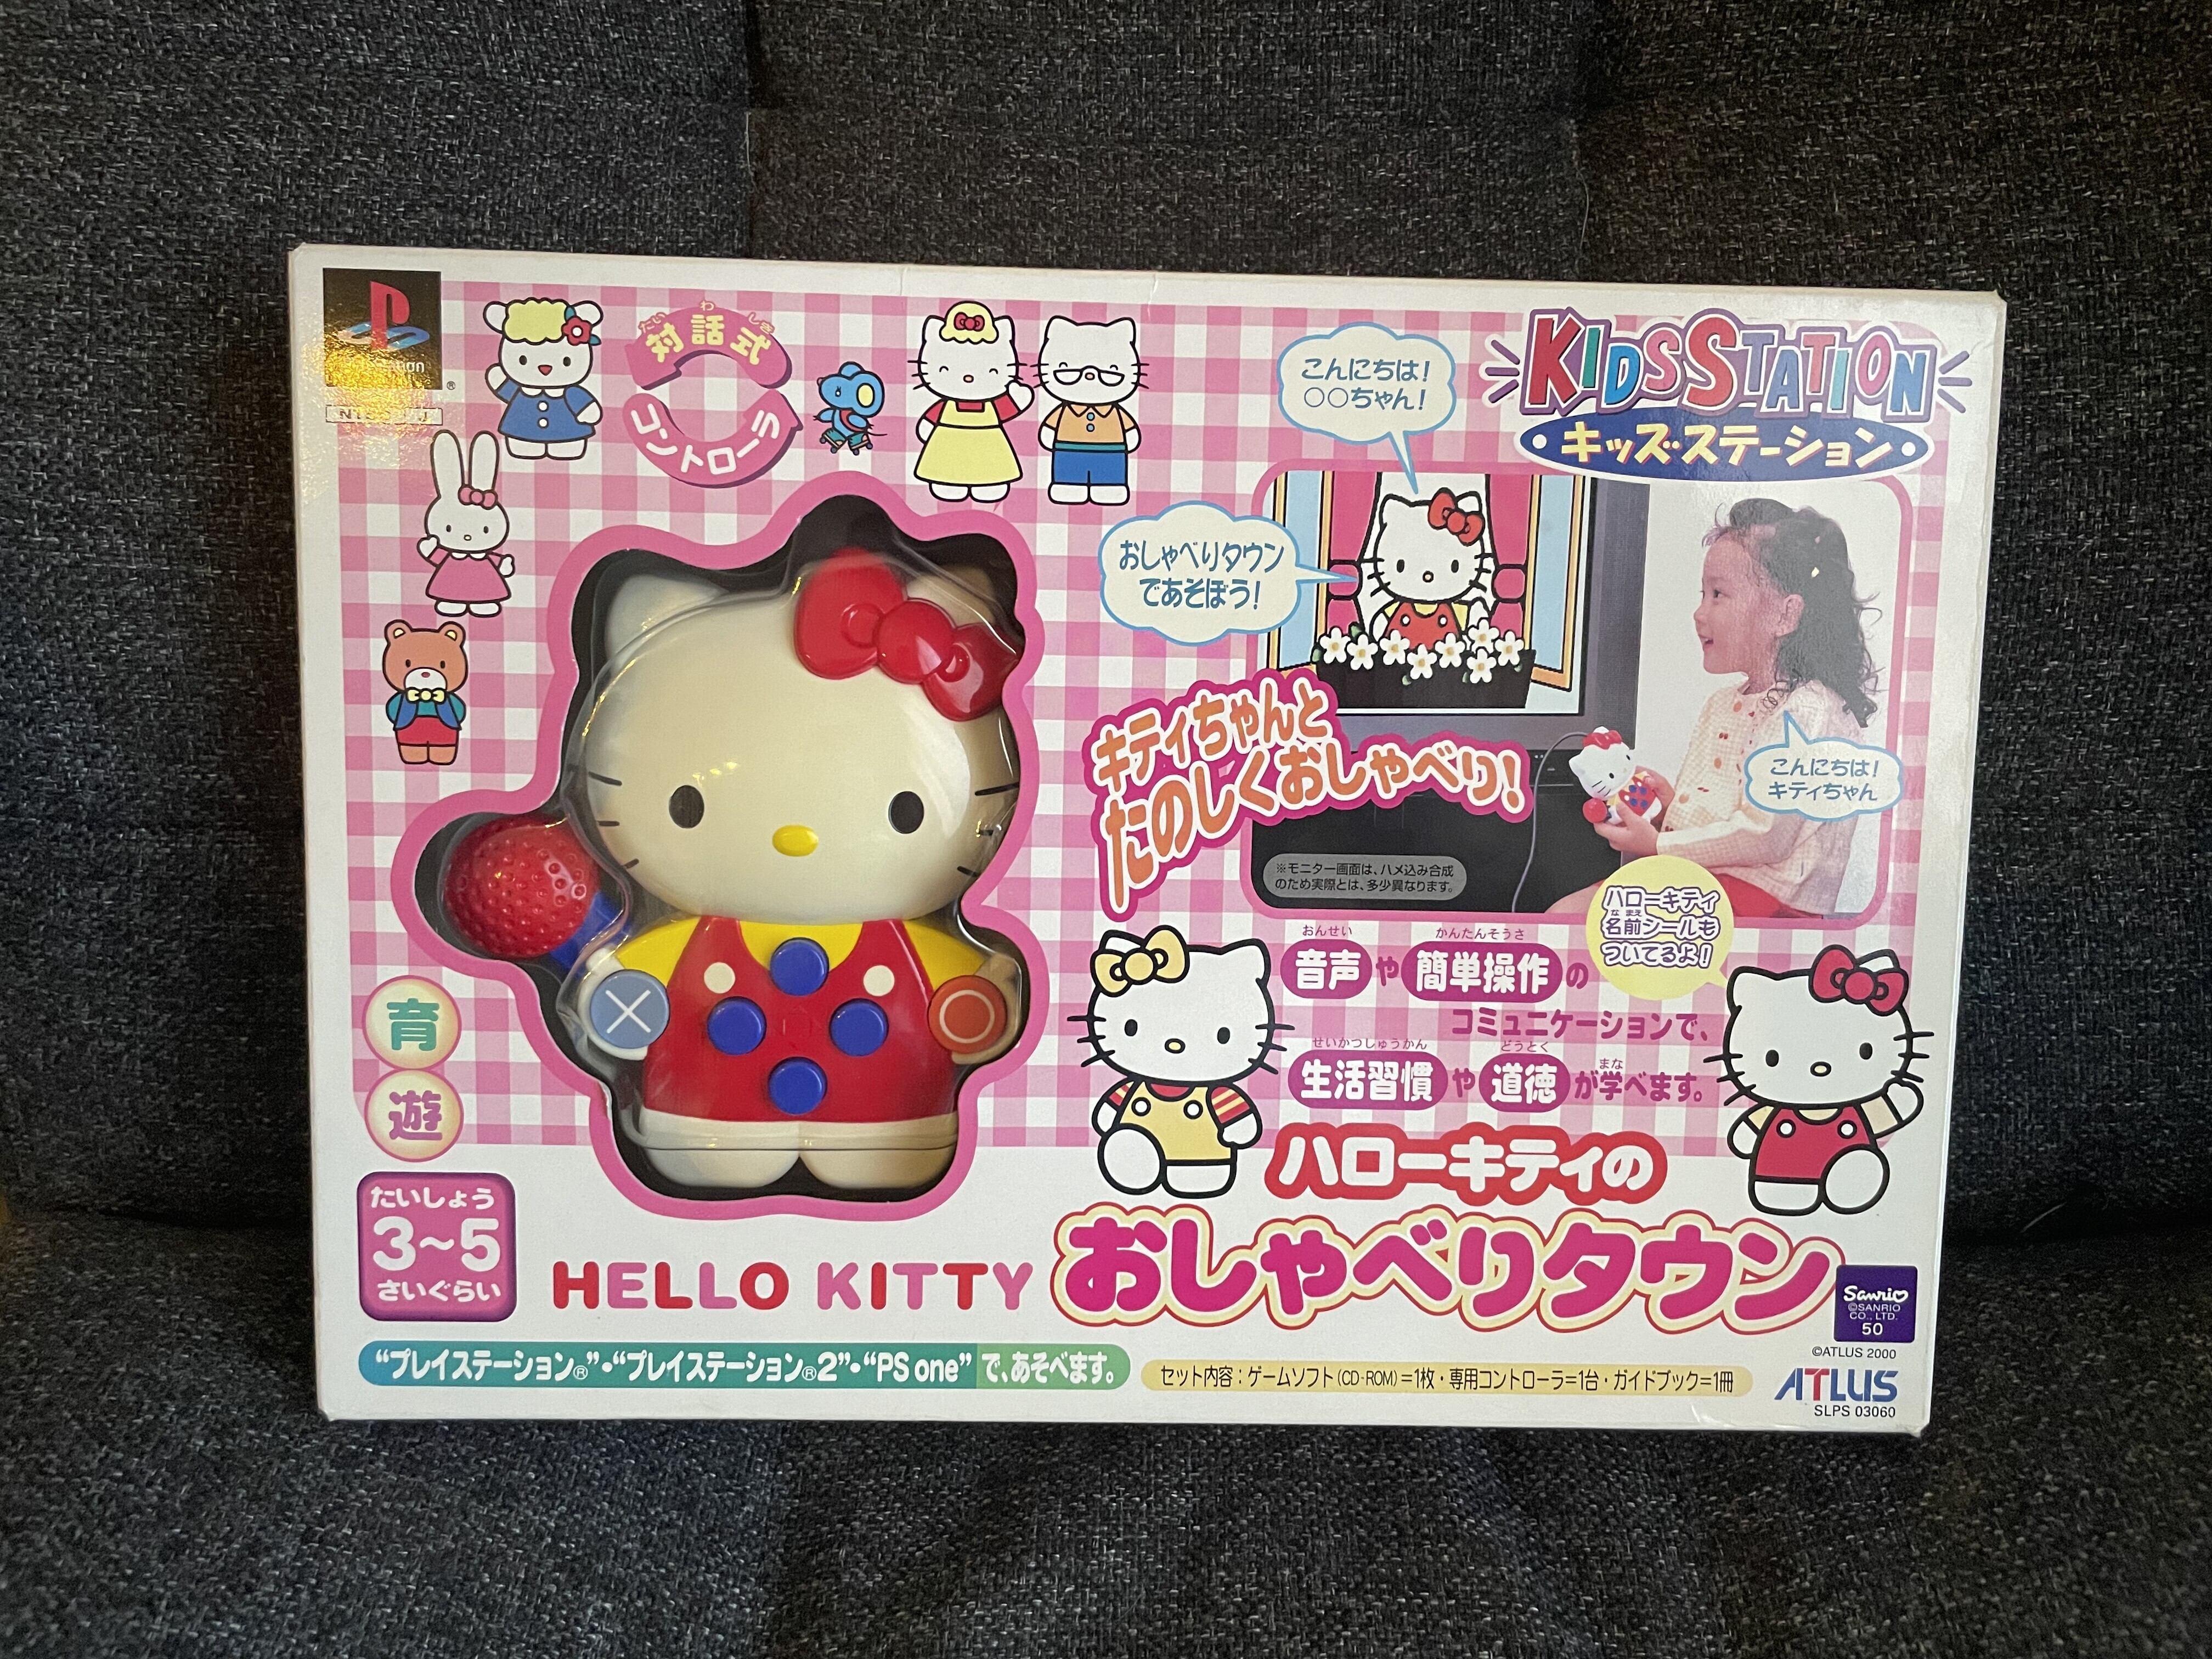  Atlus PlayStation Hello Kitty Kidstation